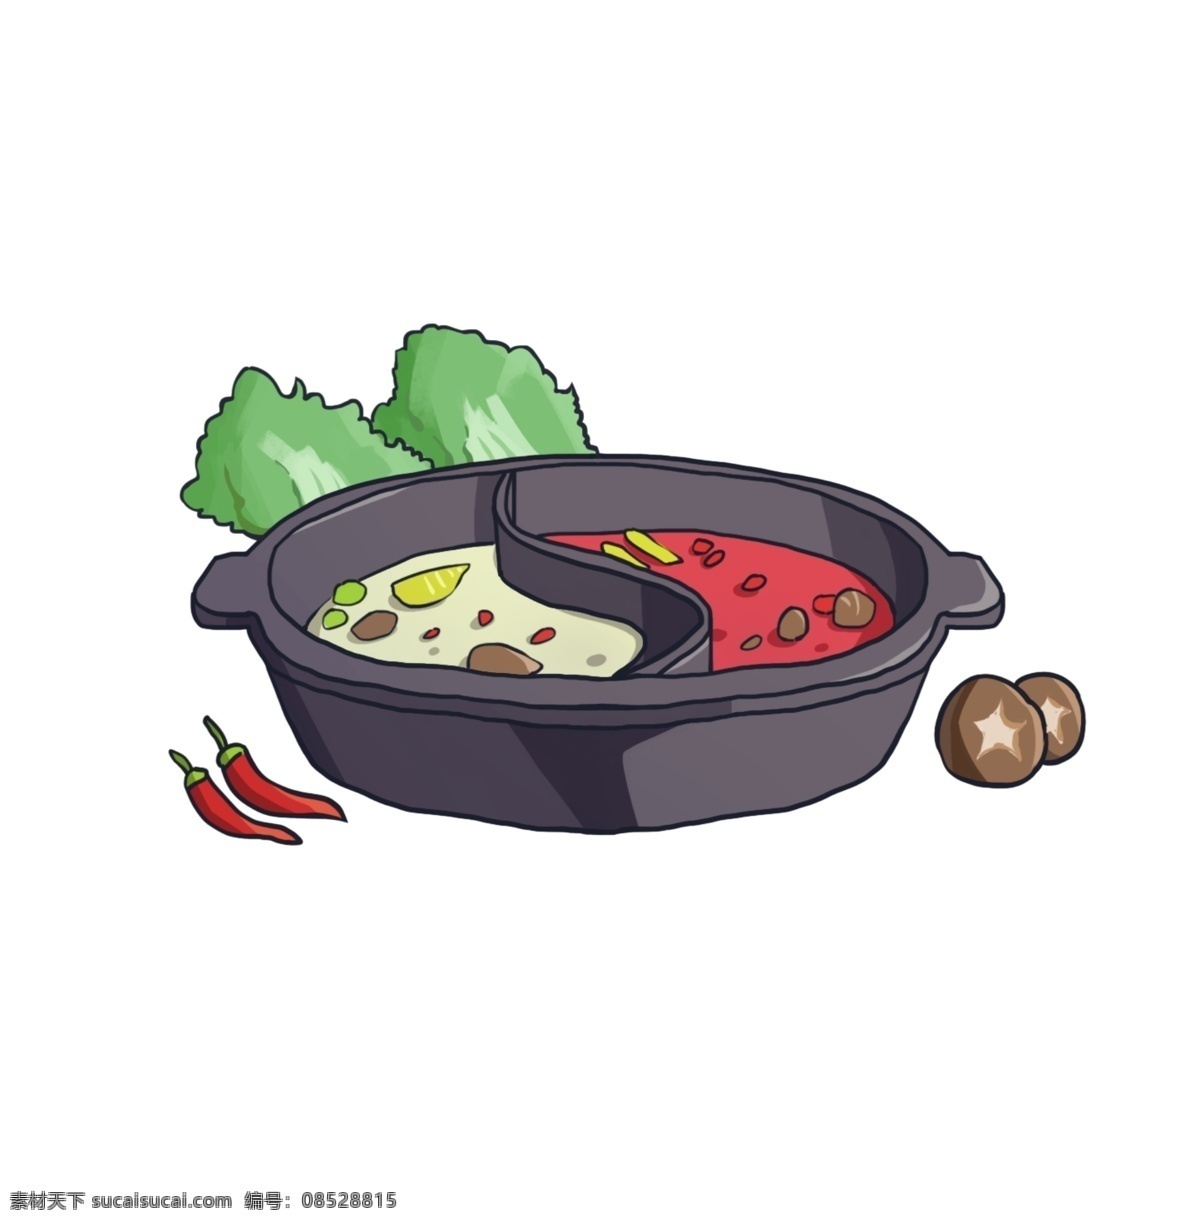 手绘 卡通 火锅 素材图片 卡通素材 食物 插画 鸳鸯锅 psd素材 大餐 食物素材 分层